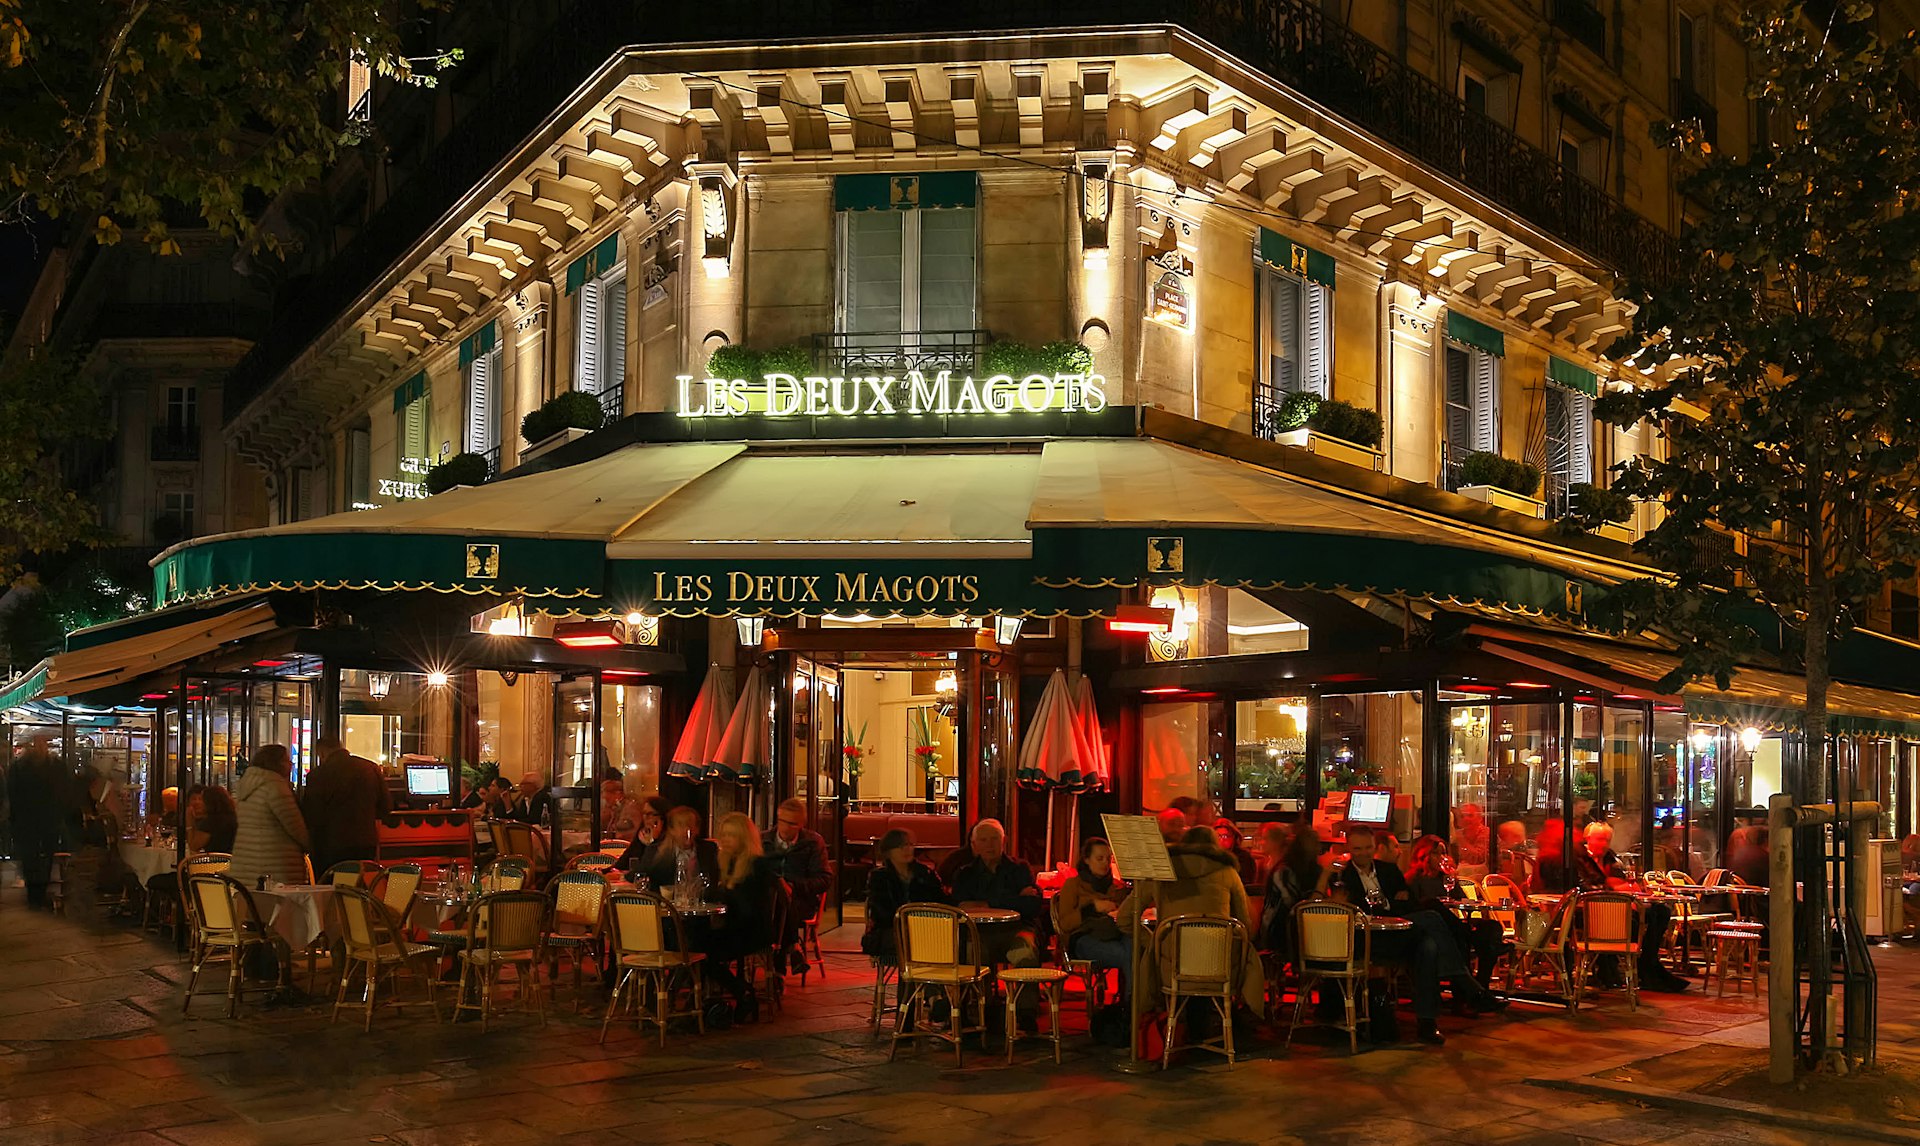 People dining at the famous cafe Les Deux Magots, Blvd St-Germain, Paris, France